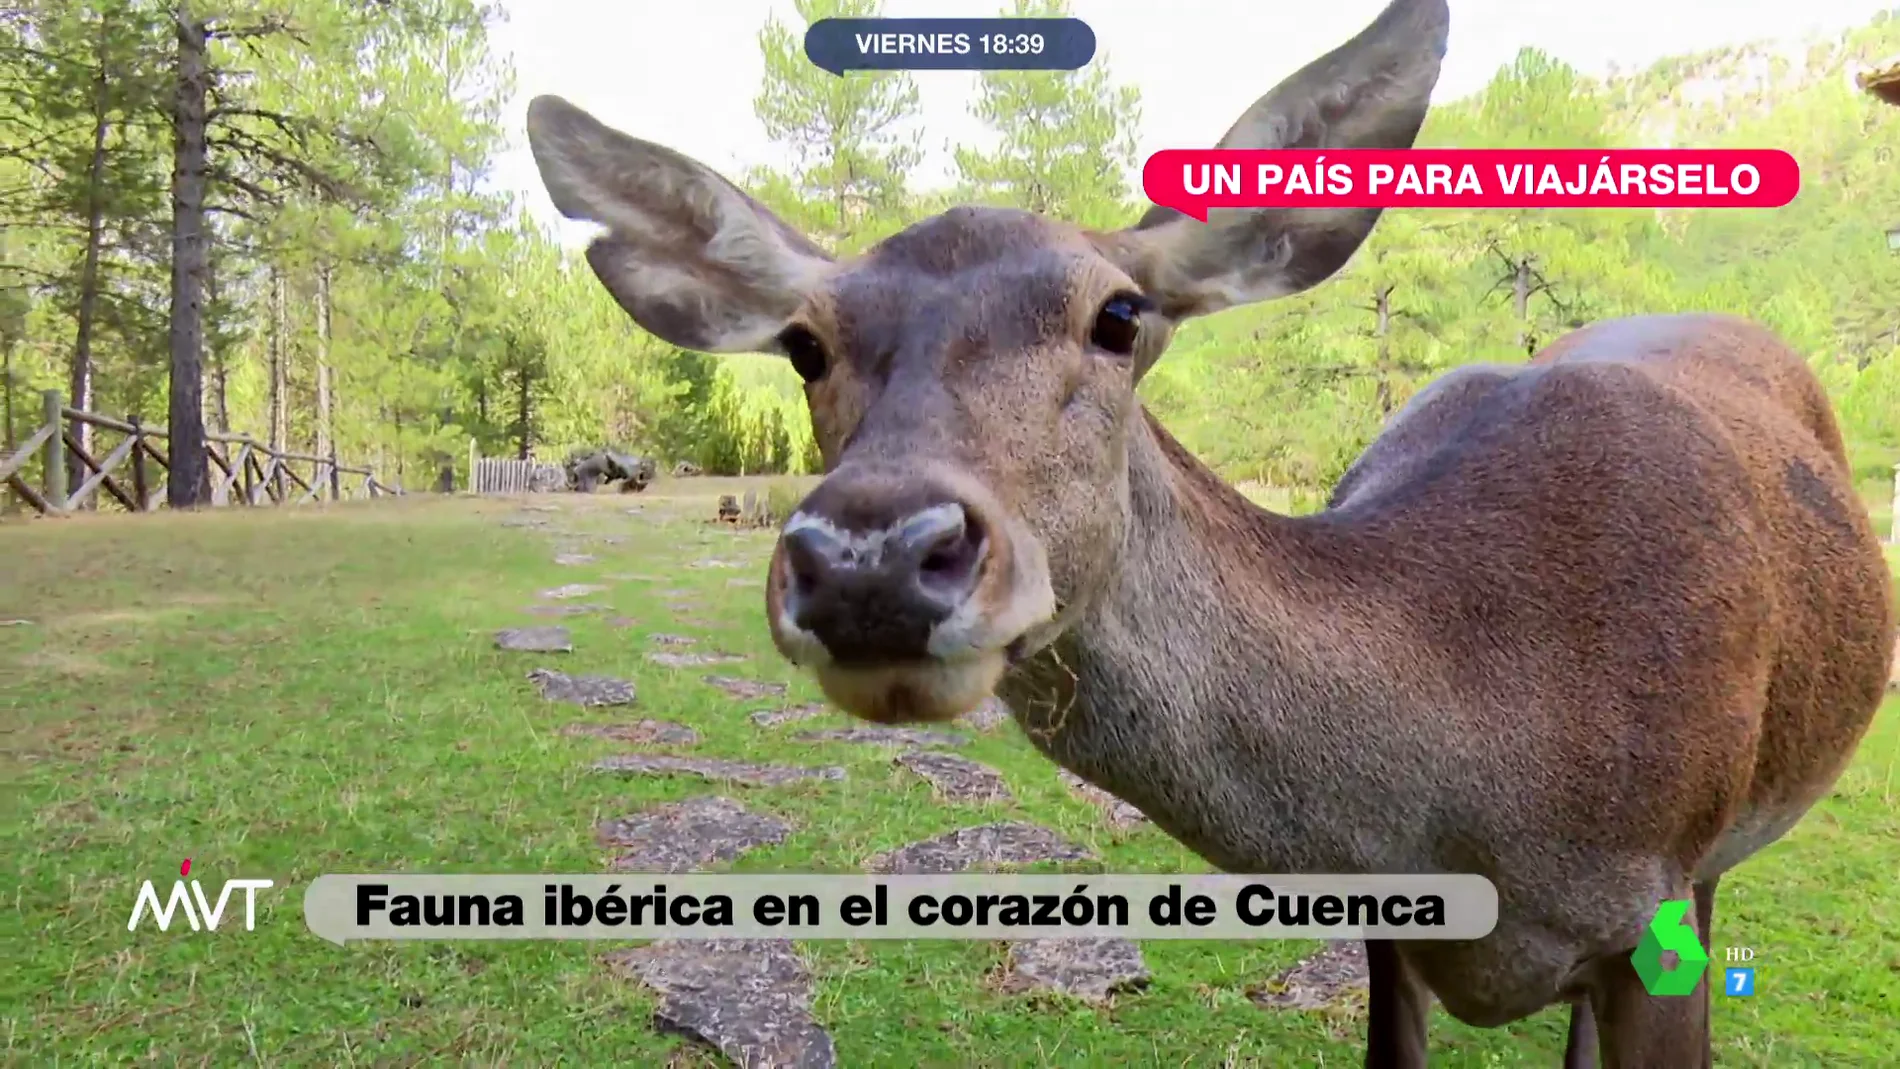  Fauna ibérica en el corazón de Cuenca